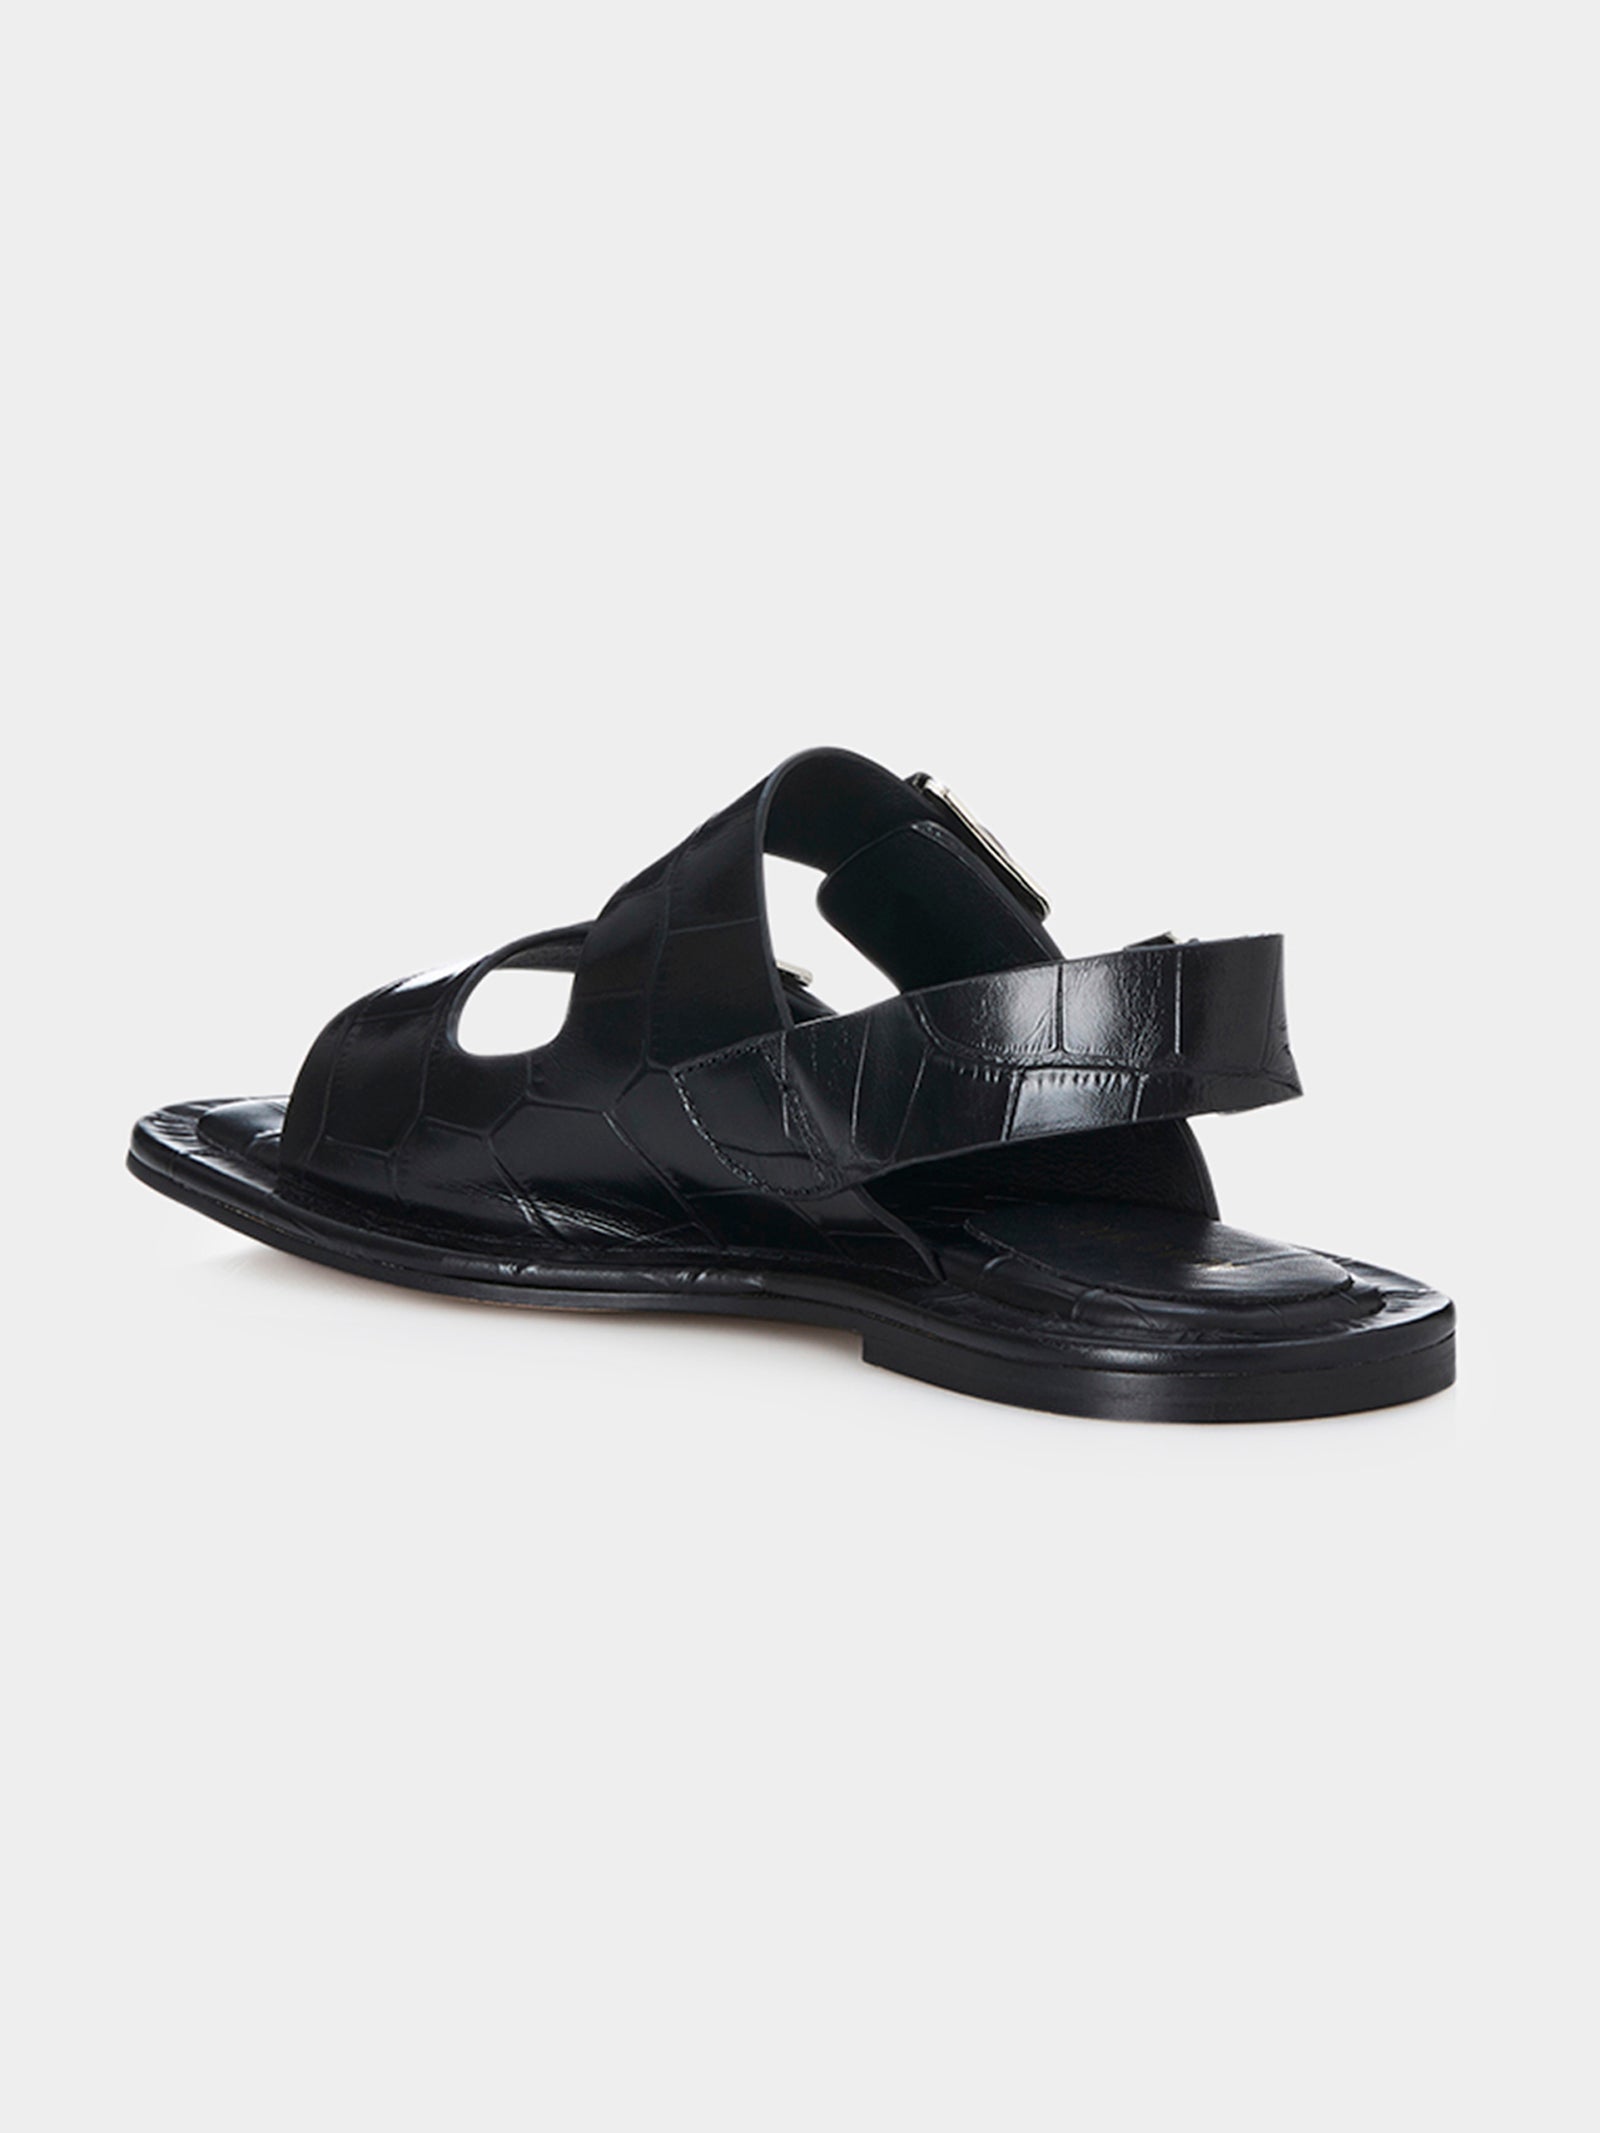 Keri Sandals in Black Croc